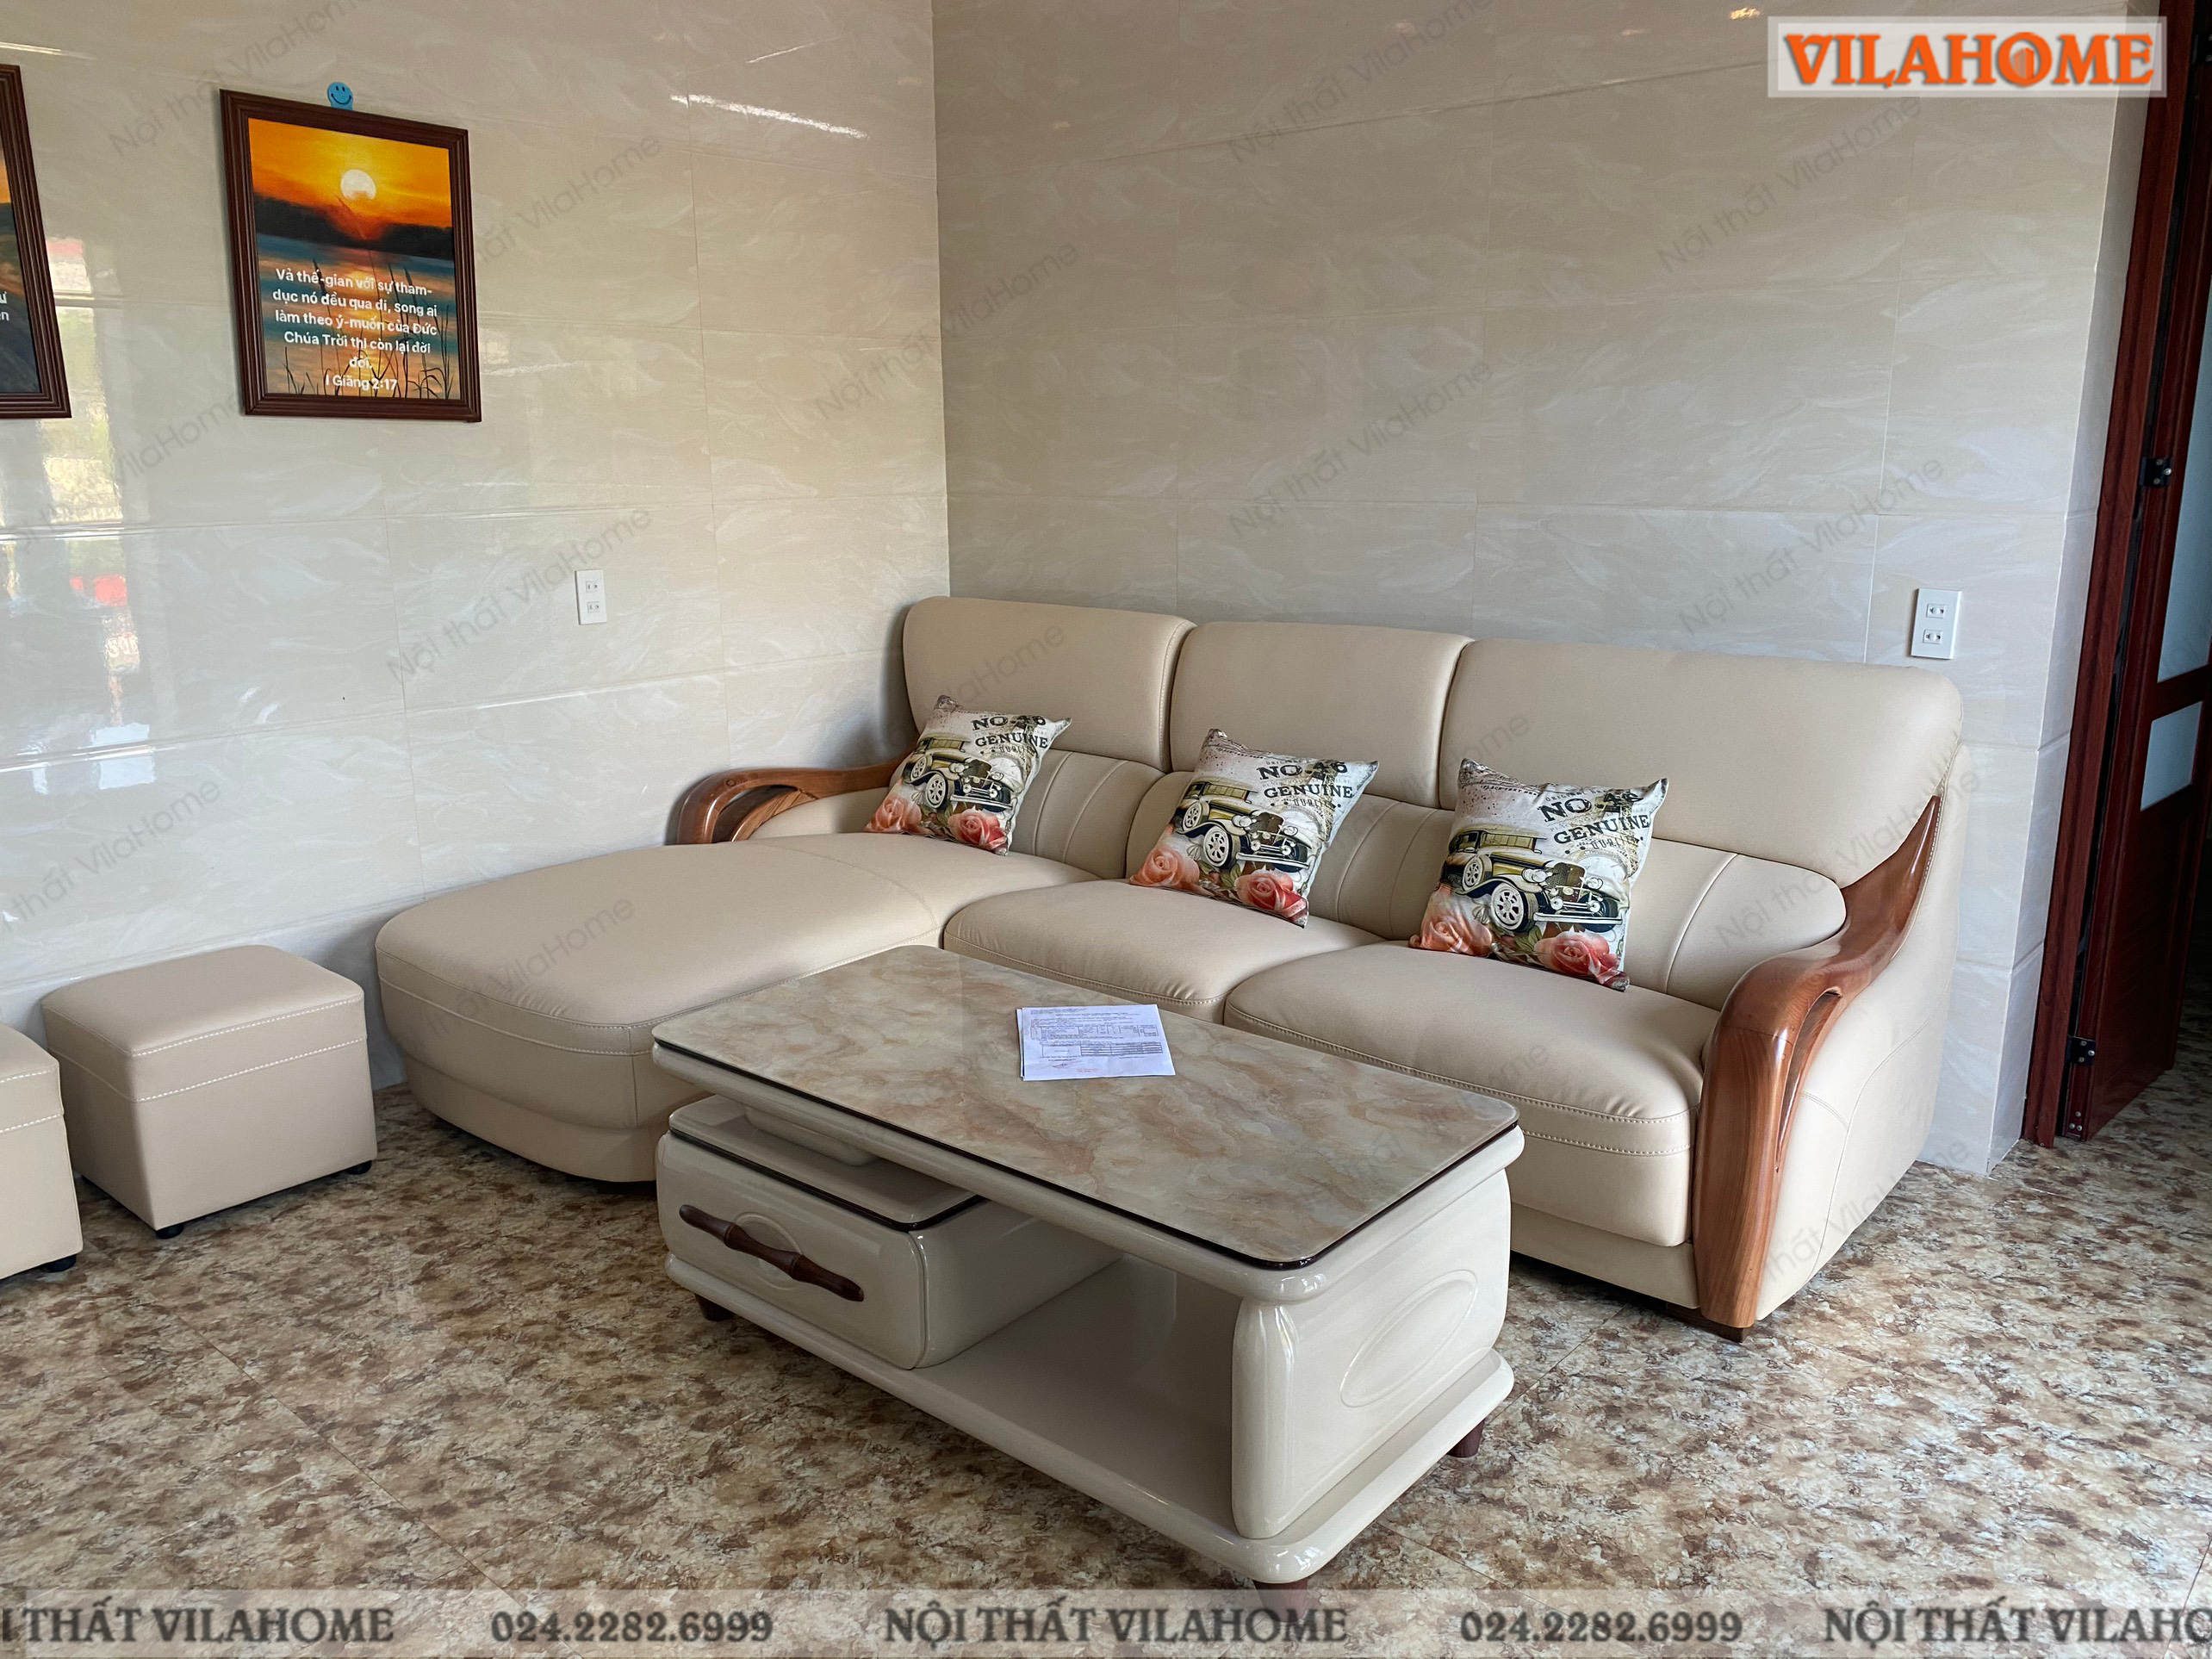 Mẫu sofa màu trắng từ xưởng sofa Bắc Ninh VilaHome.